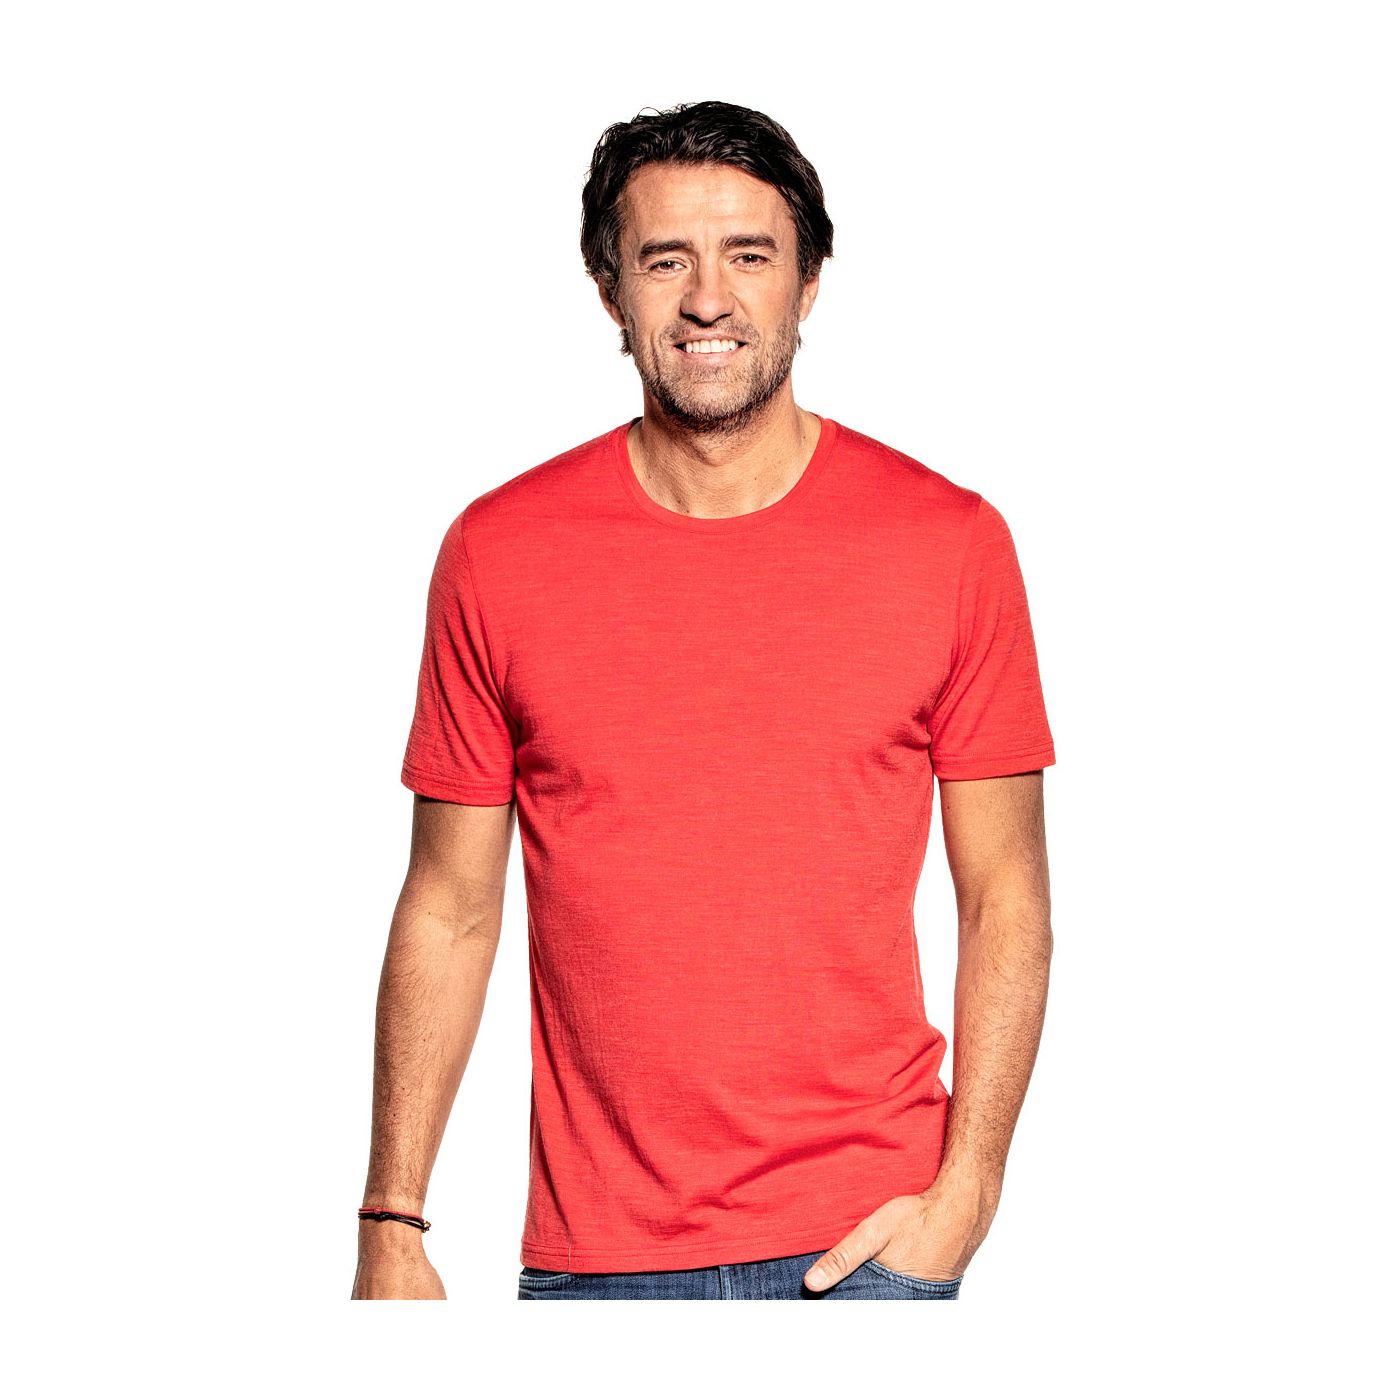 T-shirt voor mannen gemaakt van merinowol in het Oranje